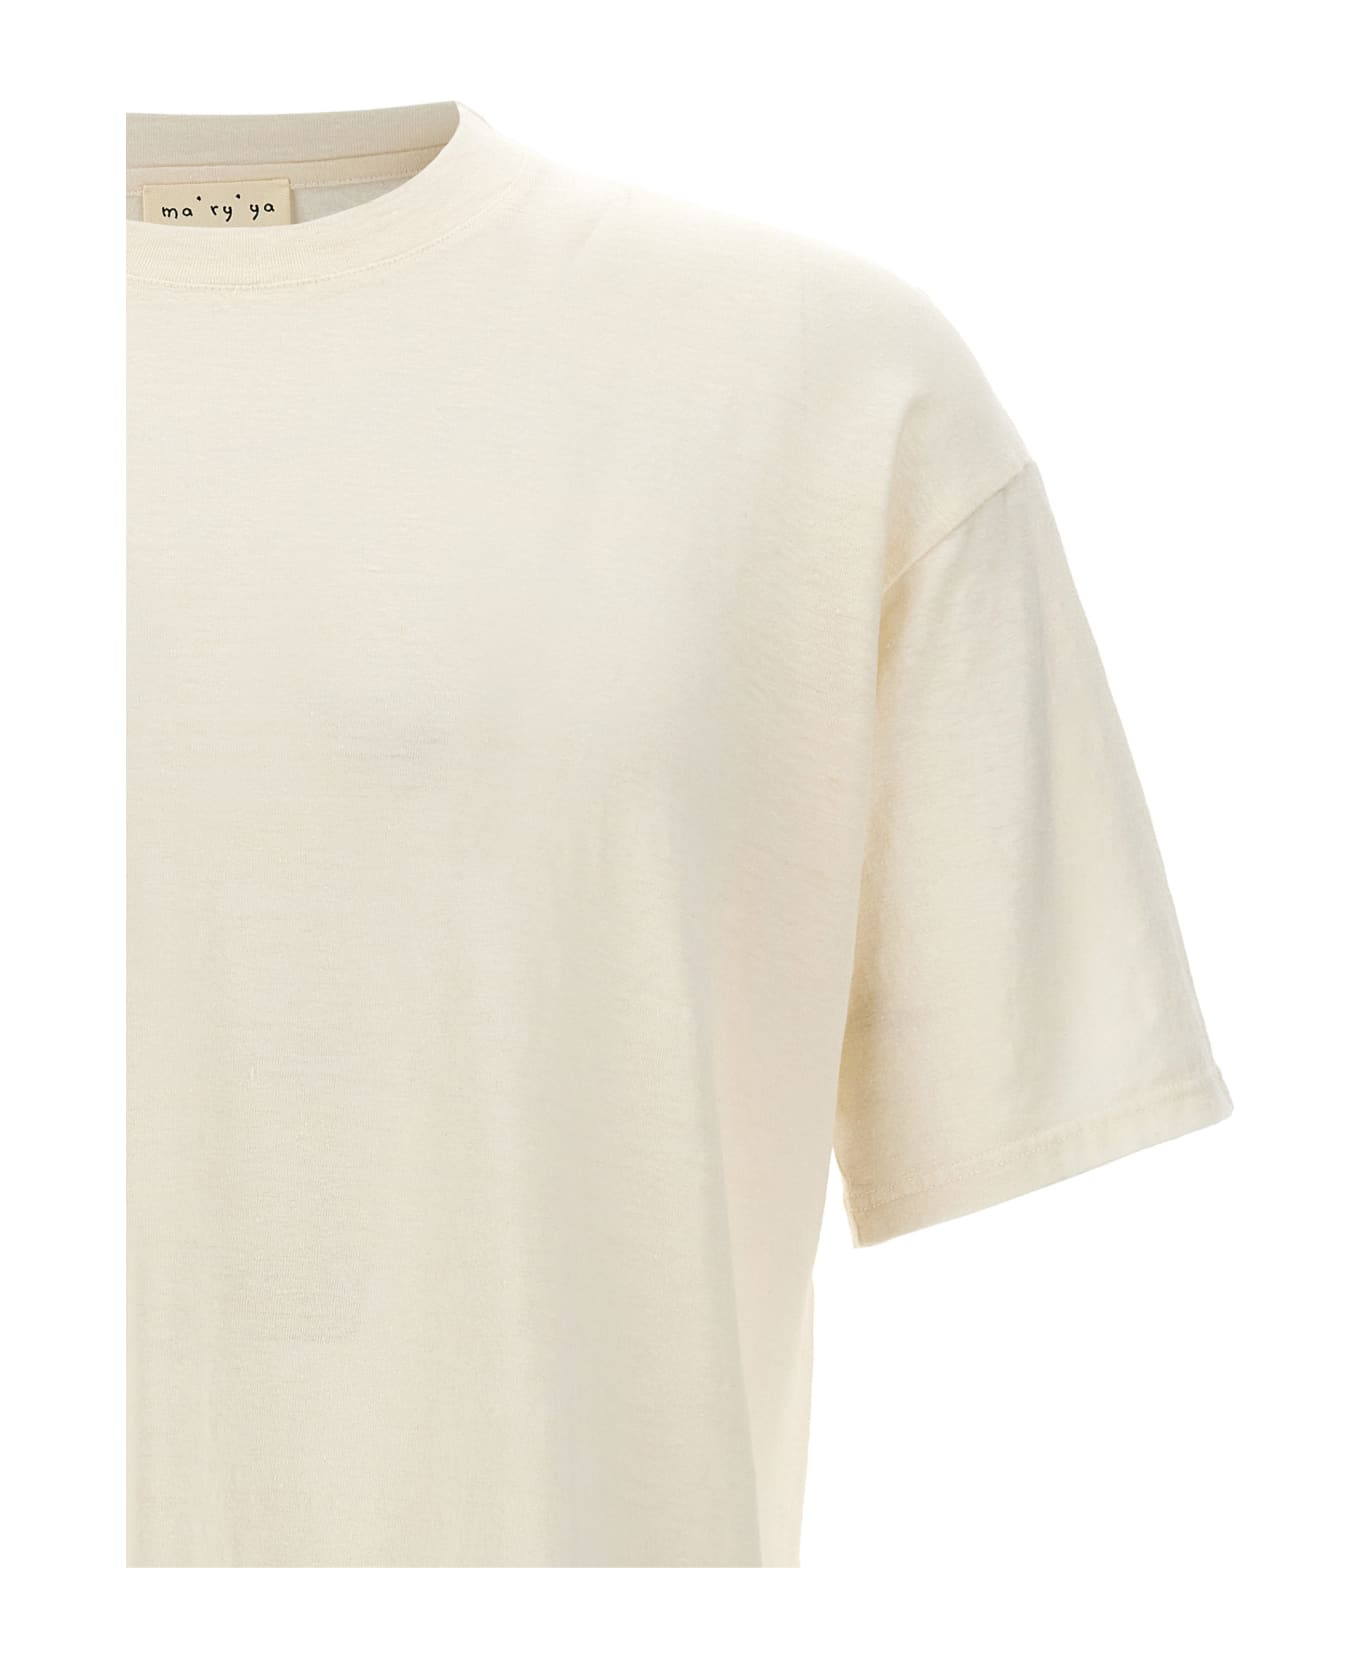 Ma'ry'ya Linen T-shirt - White シャツ